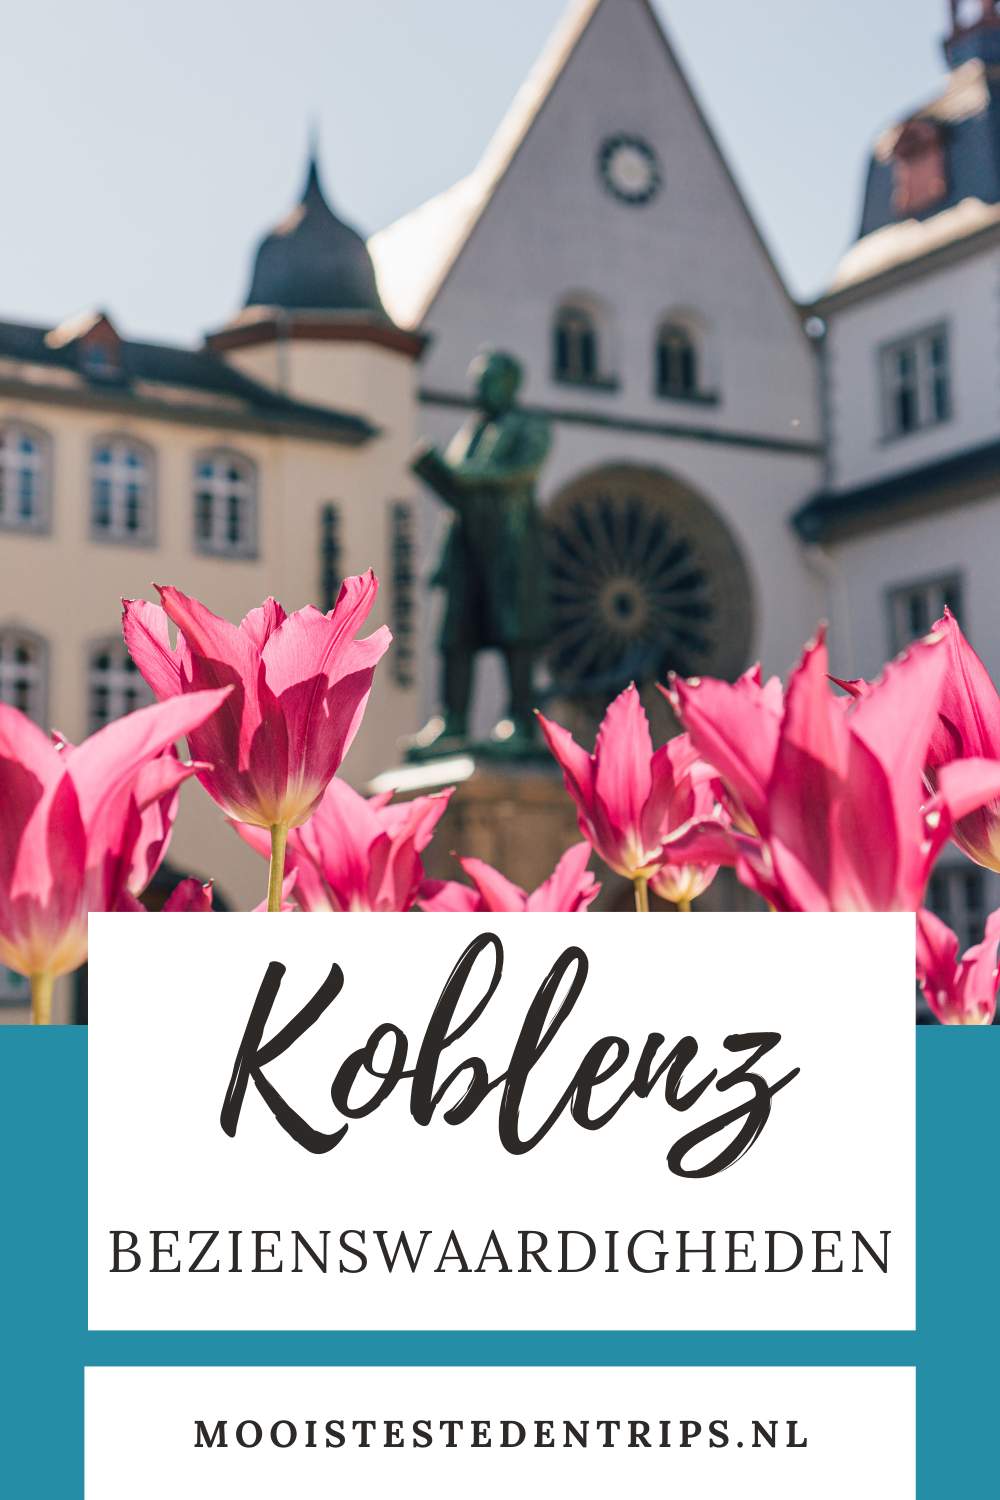 Koblenz, Duitsland: ontdek de mooiste bezienswaardigheden in Koblenz | Mooistestedentrips.nl